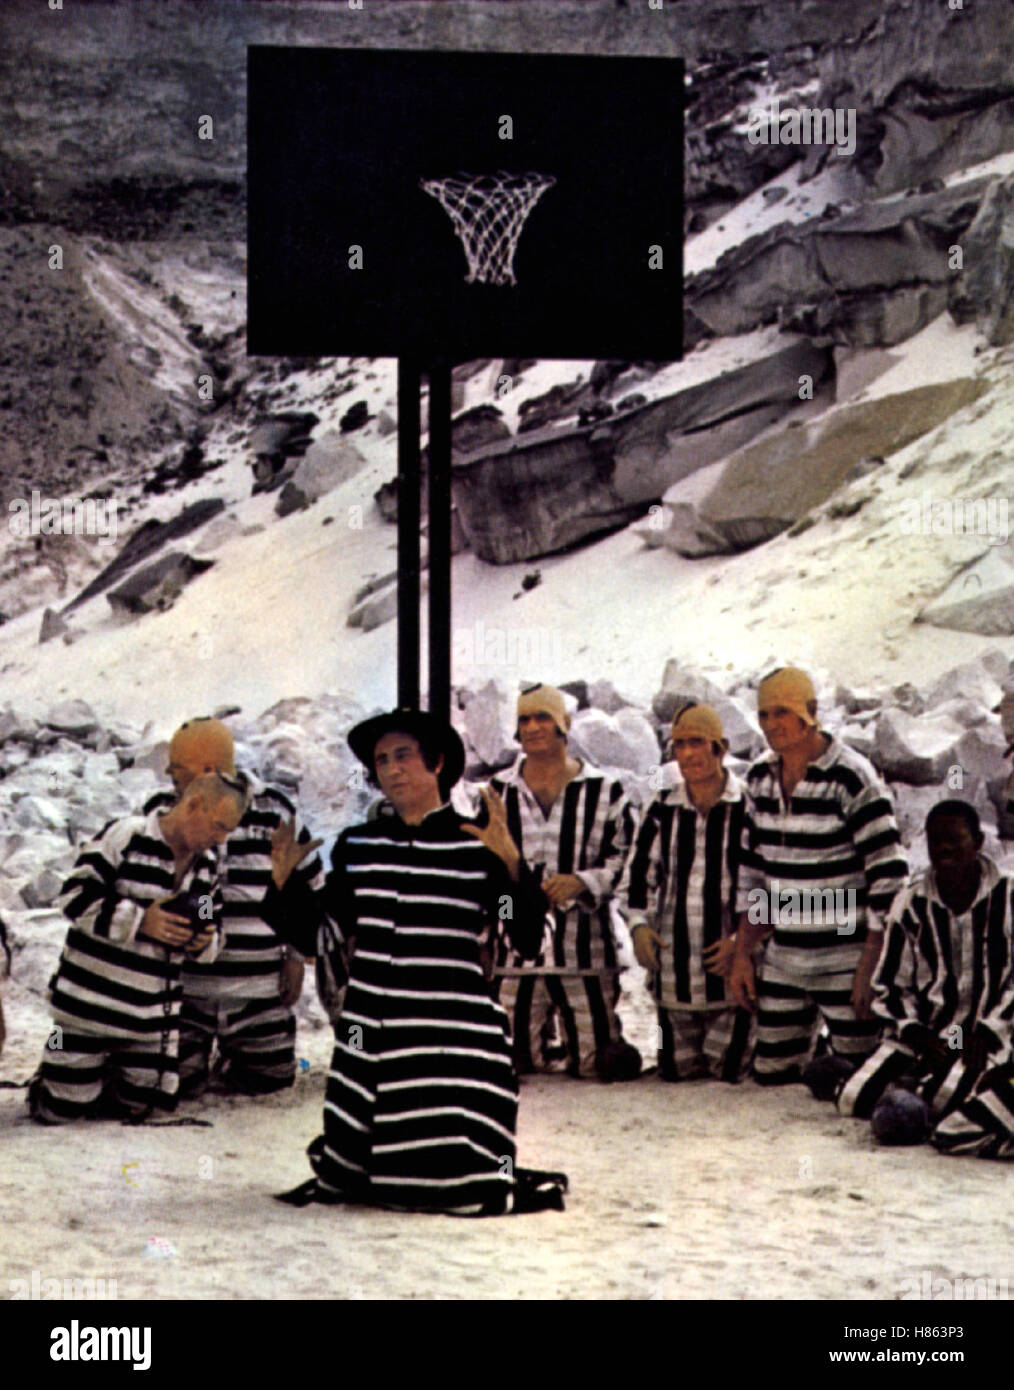 Der Harte mit dem weichen Keks, (LA GRANDE MAFFIA) F-IT 1971, Regie: Philippe Clair, Szene, Stichwort: Sträflinge, Basketball Stock Photo